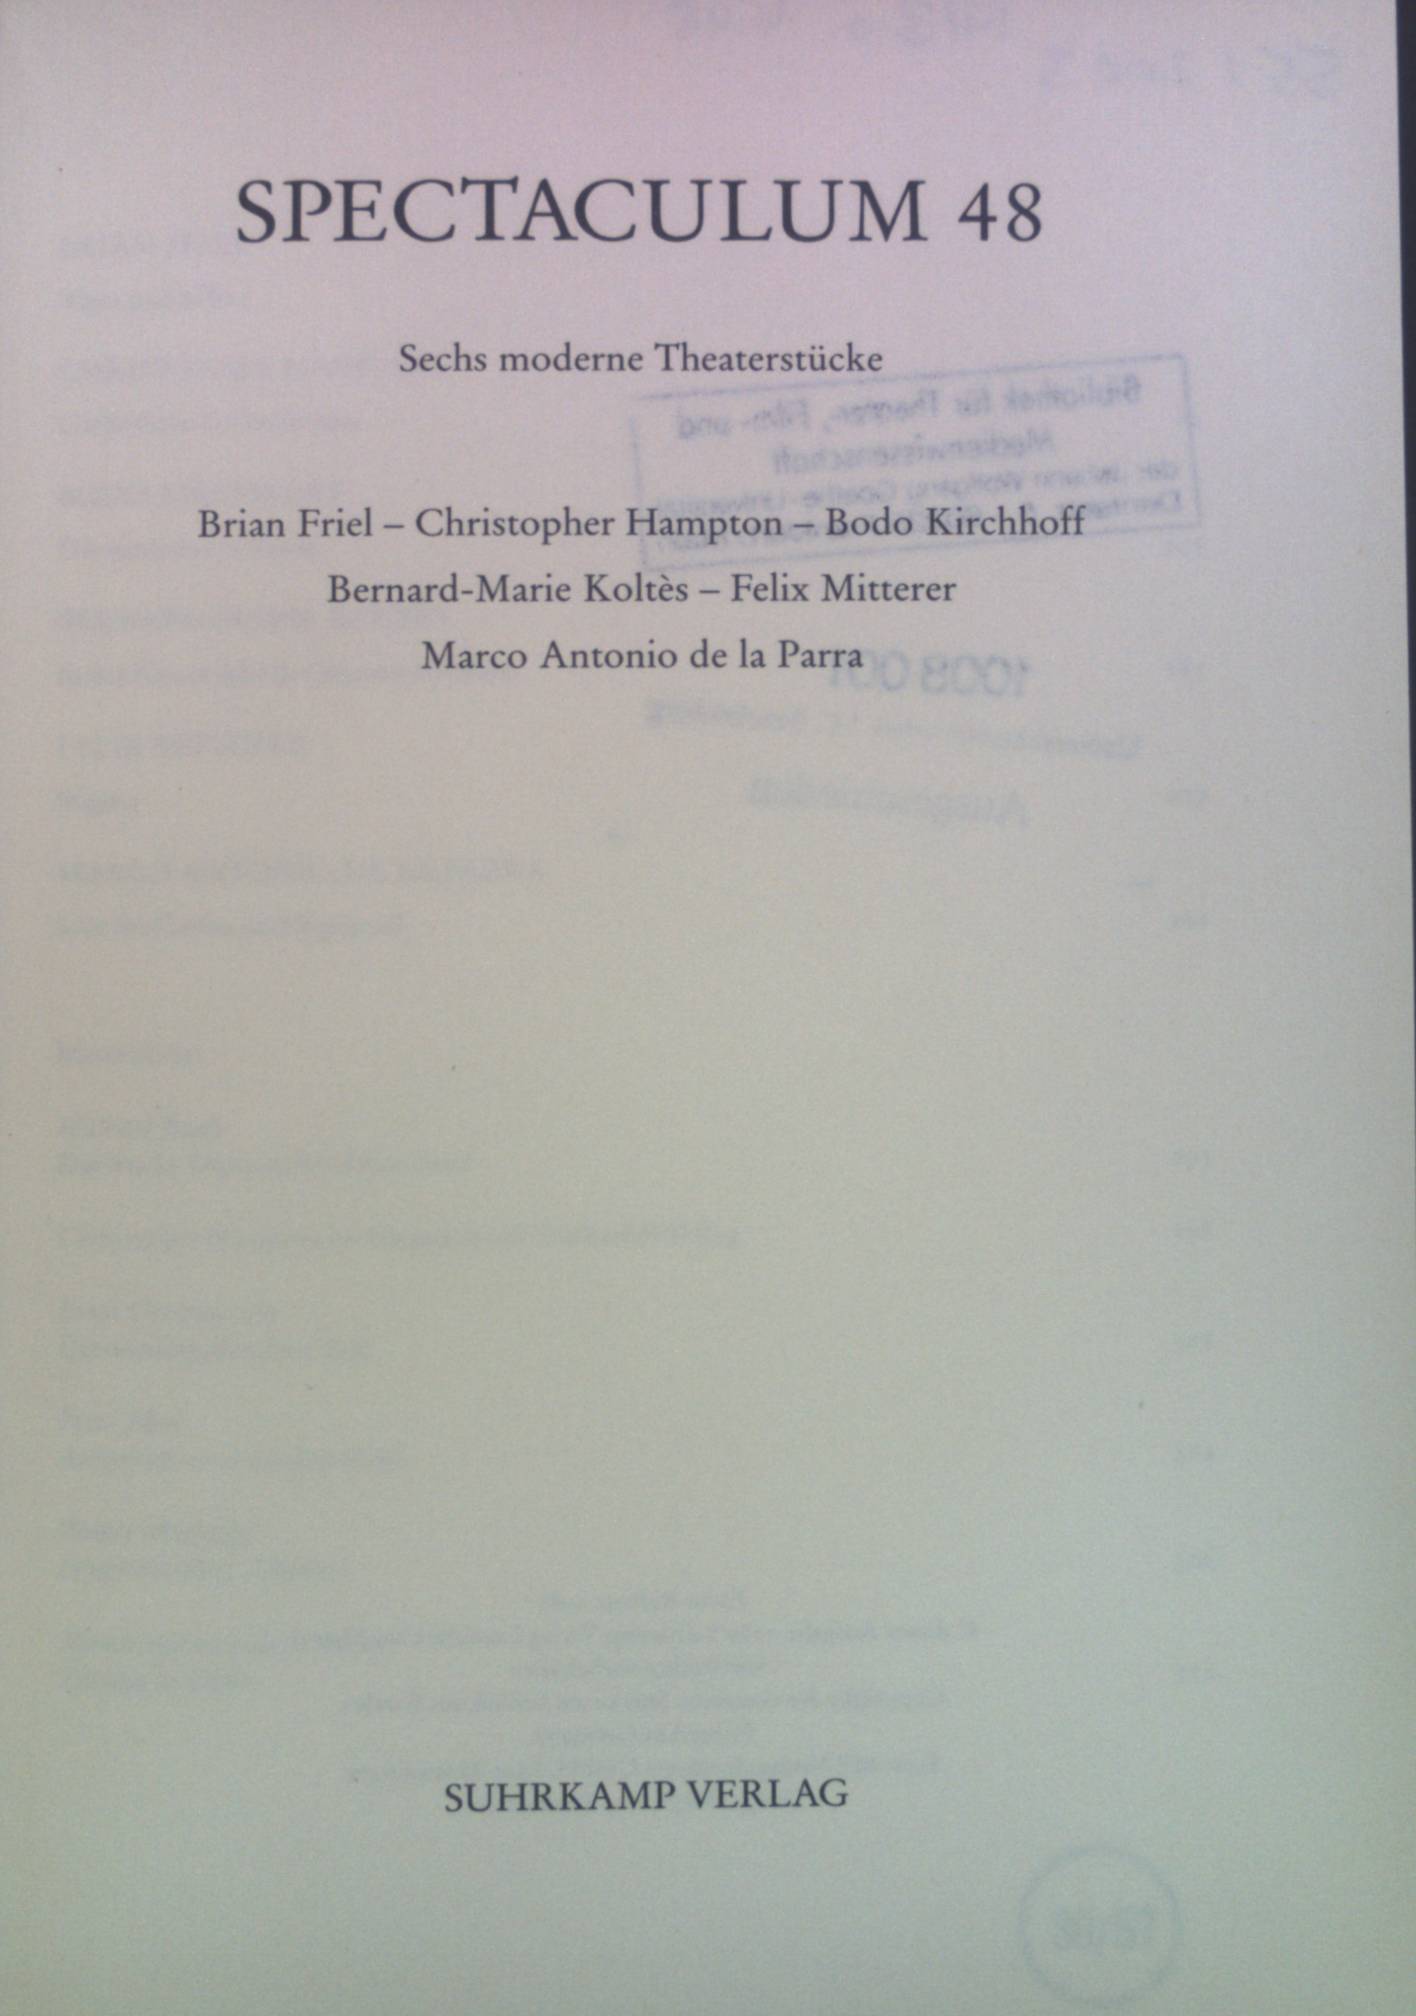 Spectaculum 48: Sechs moderne Theaterstücke - Friel, Brian, Christopher Hampton Bodo Kirchhoff u. a.